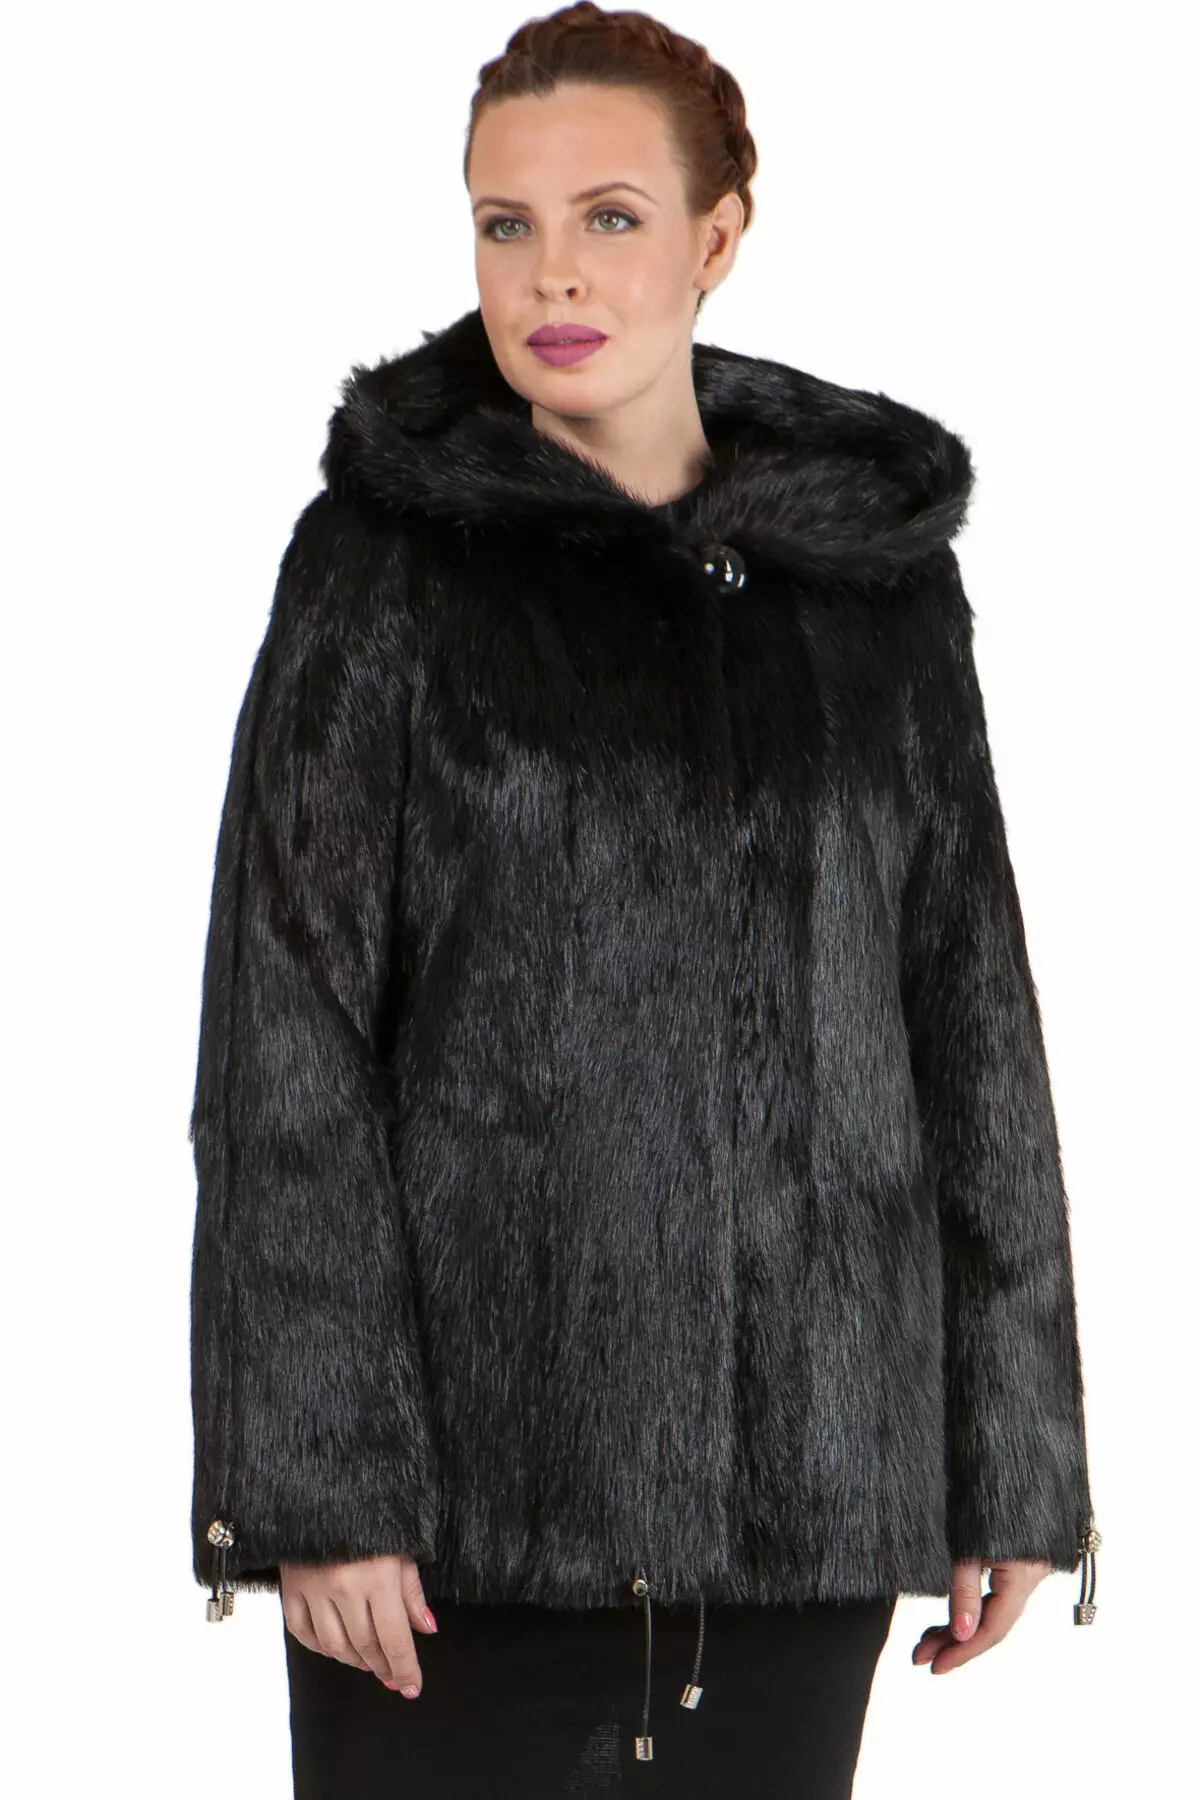 Cappotto di pelliccia NUTRIA (113 foto): Quanto costa il cappotto nutriente, dallo scudo nutria, caldo o no, blu nutria, bianco, con cappuccio, recensioni 711_66